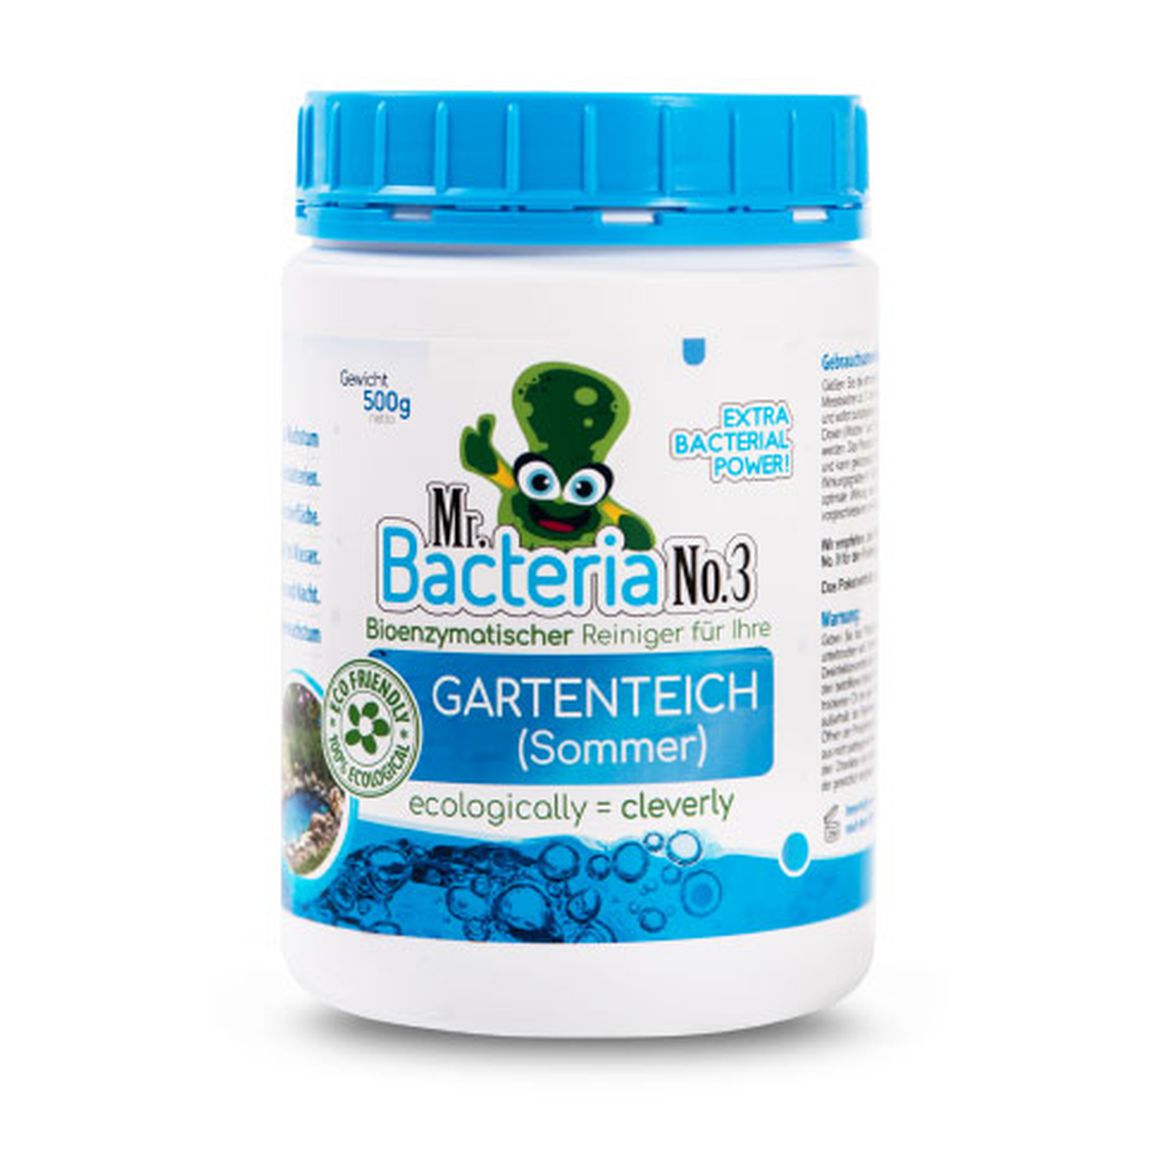 Mr.Bacteria No.3 Bioenzymatischer Reiniger für Ihre